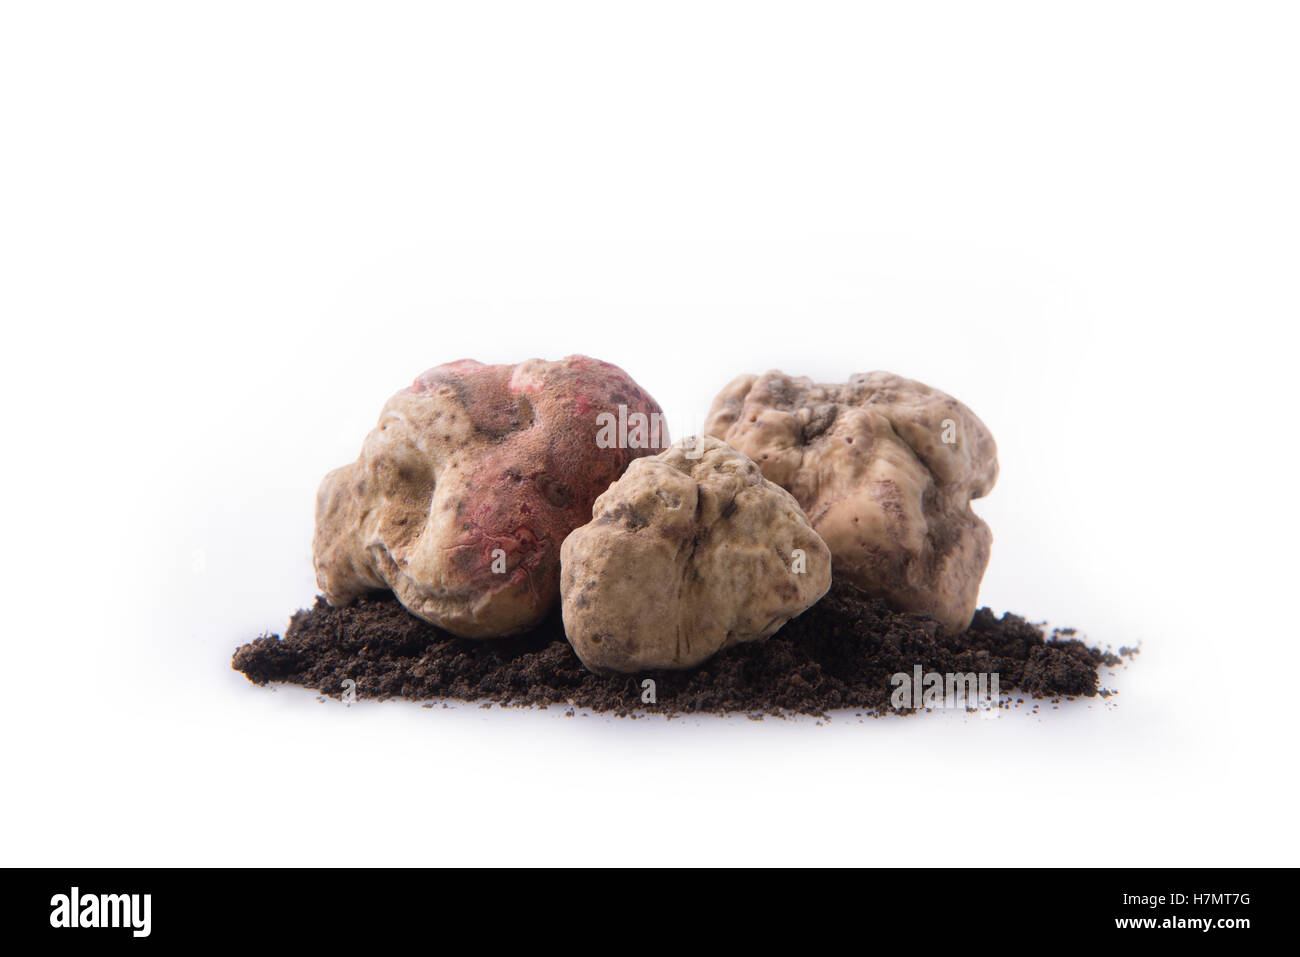 Alba white truffle tuber on isolated white background Stock Photo